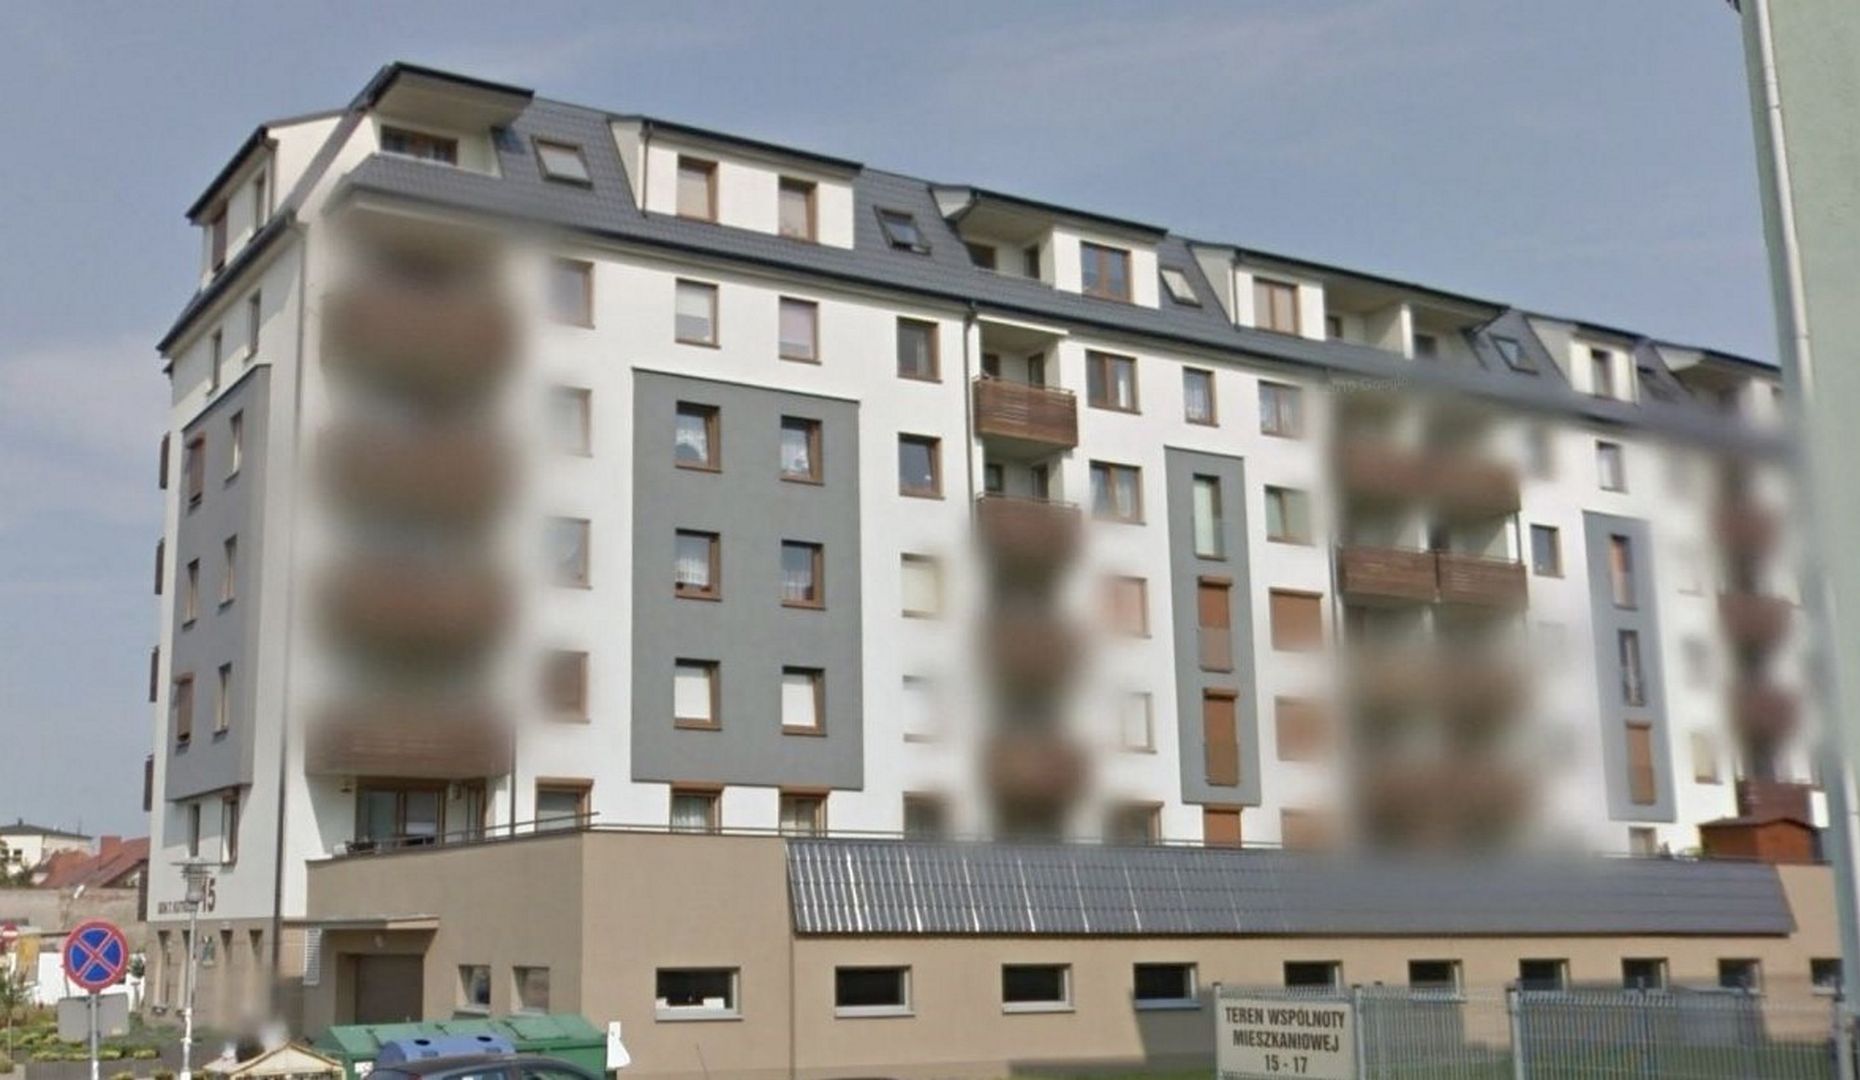 Dramat na osiedlu we Wrześni. 16-latek wypadł z okna